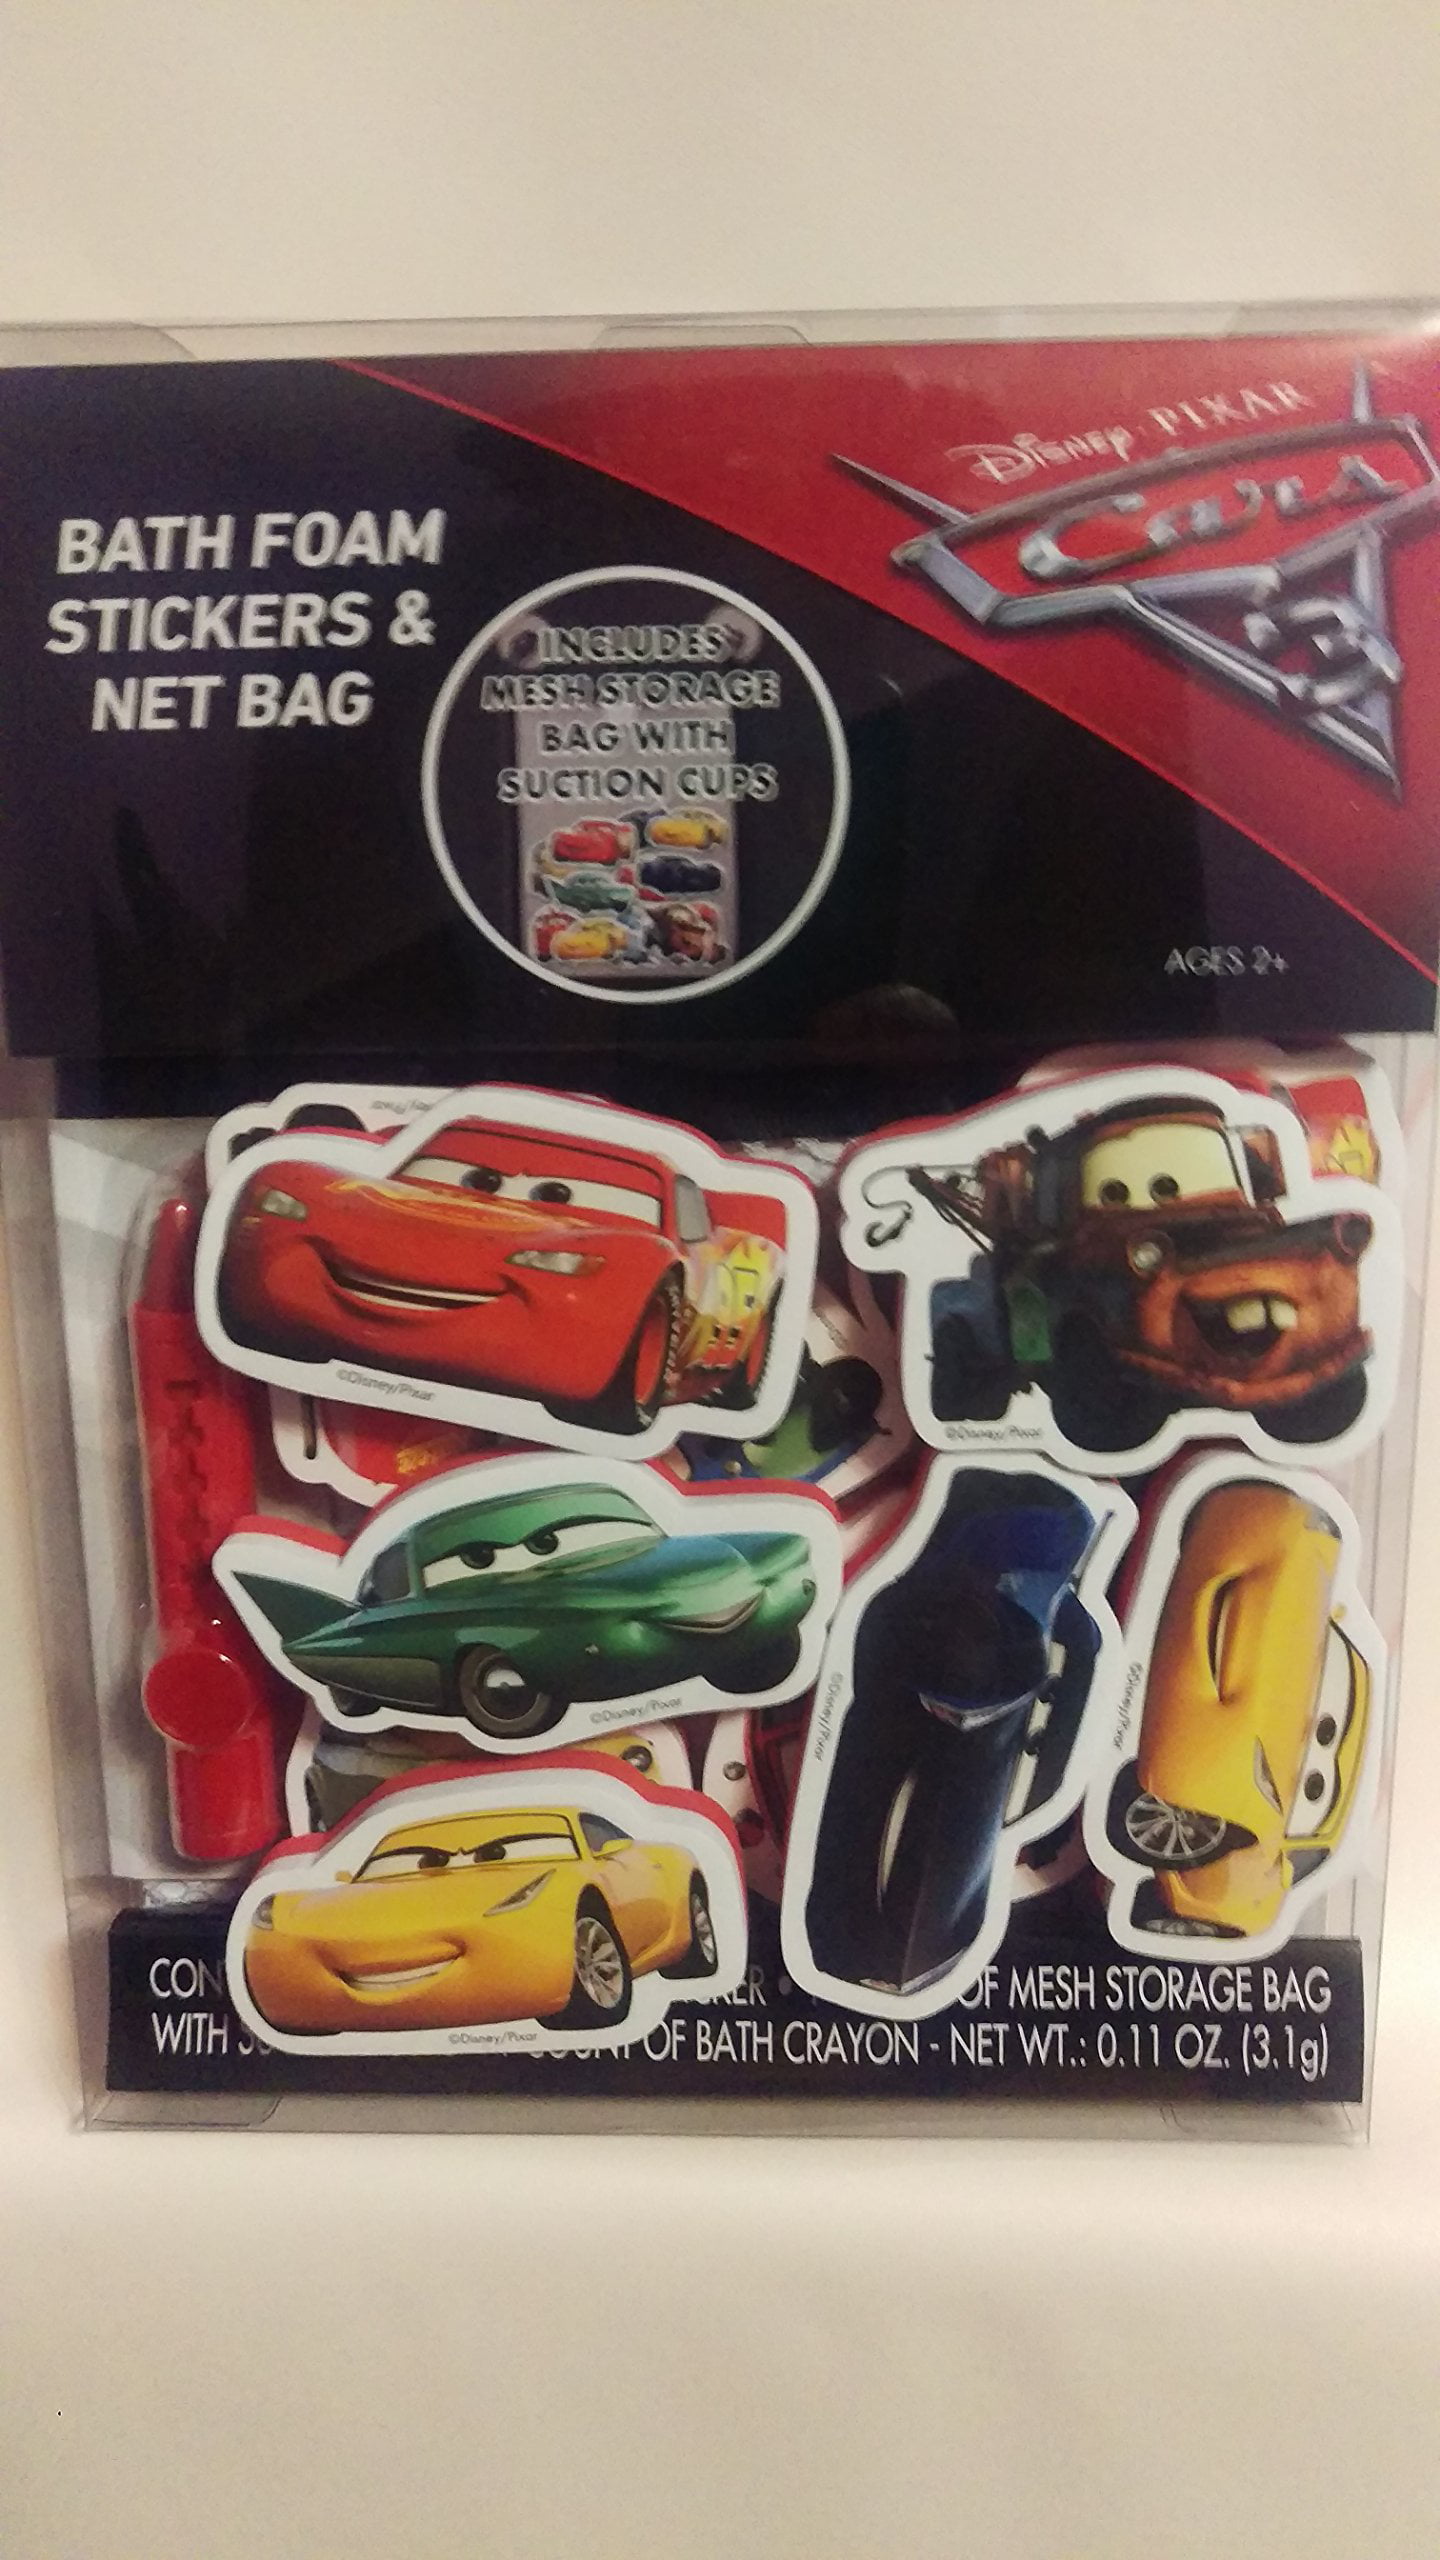 Details about   Disney Pixar Cars Bath Foam Stickers & Net Bag